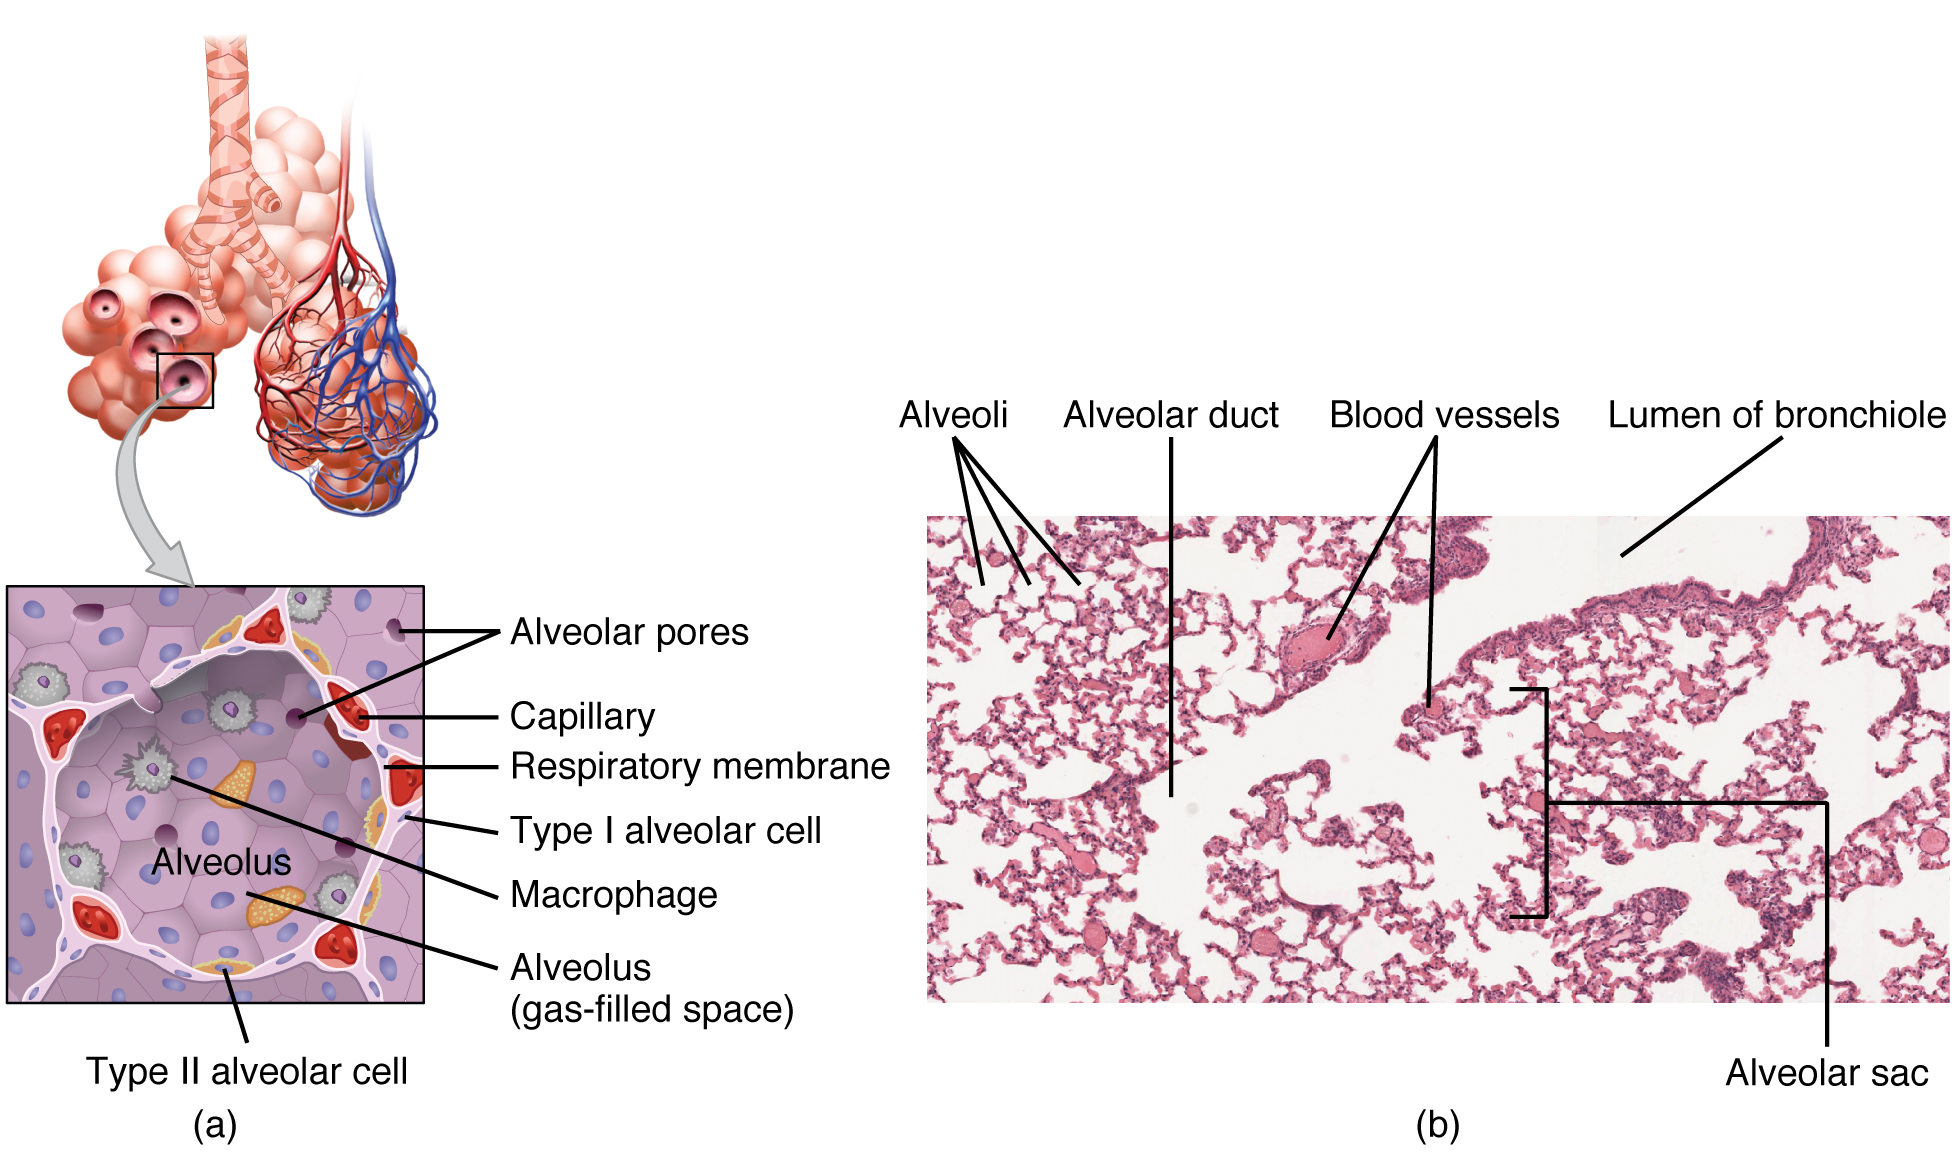 Esta figura mostra a estrutura detalhada do alvéolo. O painel superior mostra os sacos alveolares e os bronquíolos. O painel central mostra uma visão ampliada do alvéolo e o painel inferior mostra uma micrografia da seção transversal de um bronquíolo.